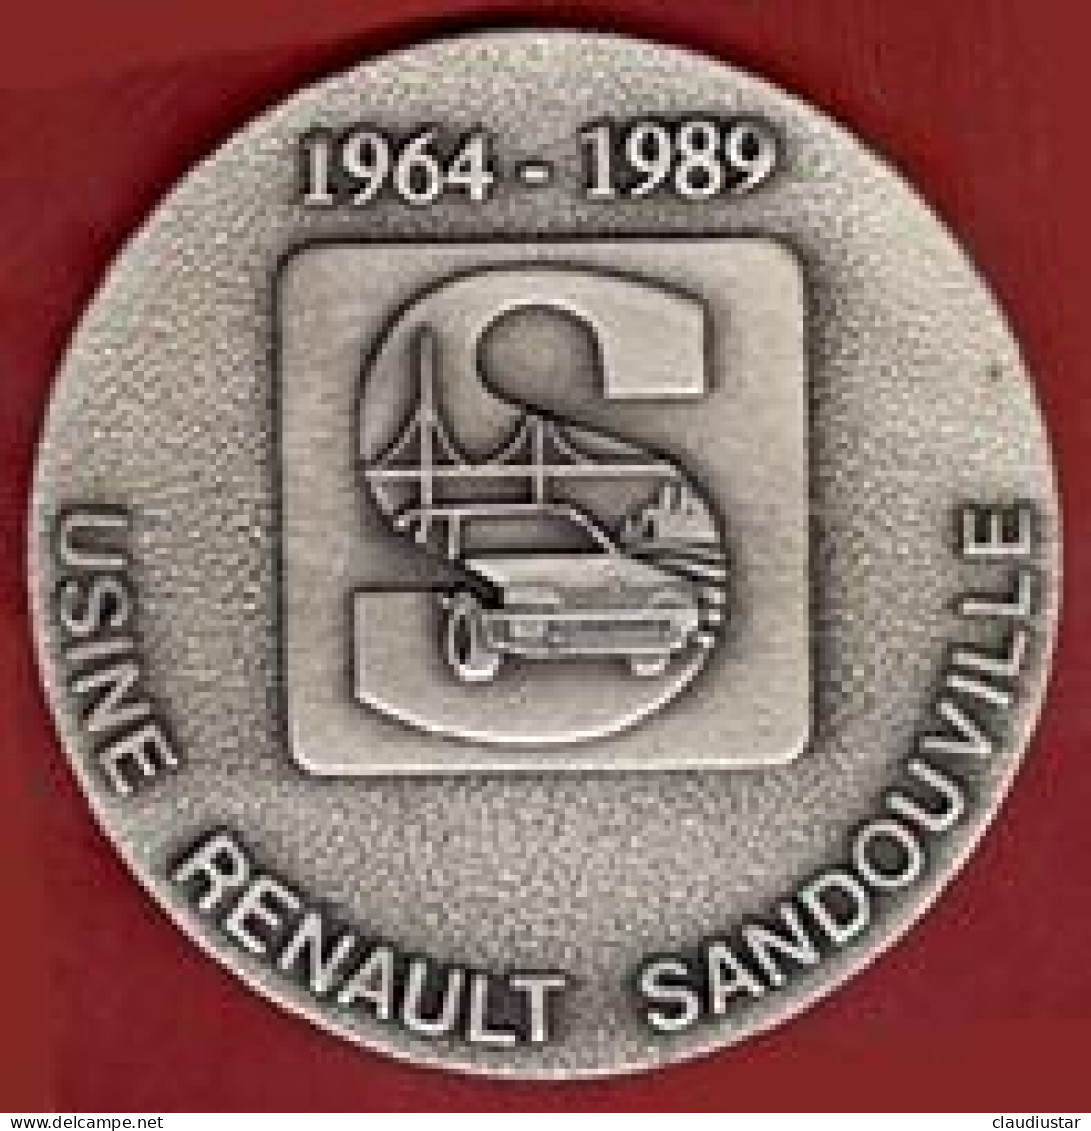 ** MEDAILLE  USINE  RENAULT  SANDOUVILLE  1964 - 1989 ** - Autorennen - F1